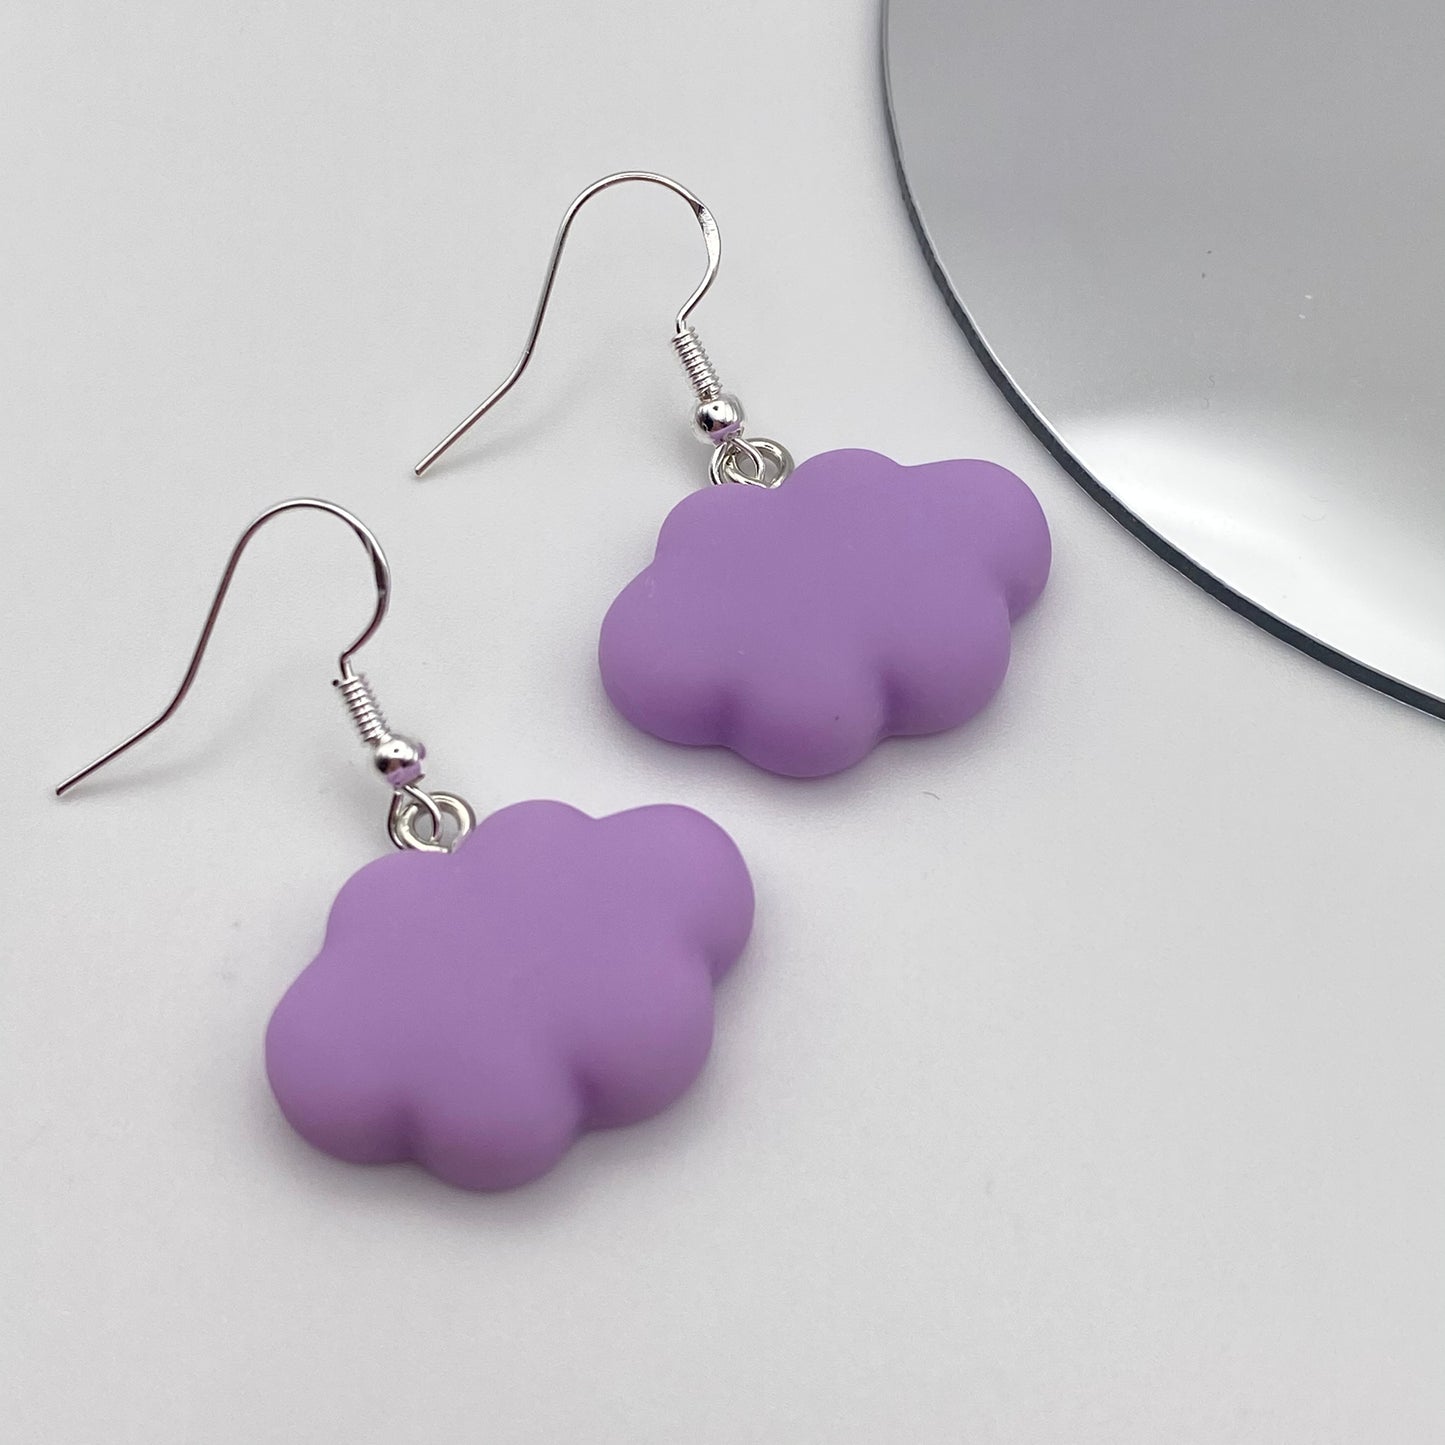 Purple Cloud Earrings